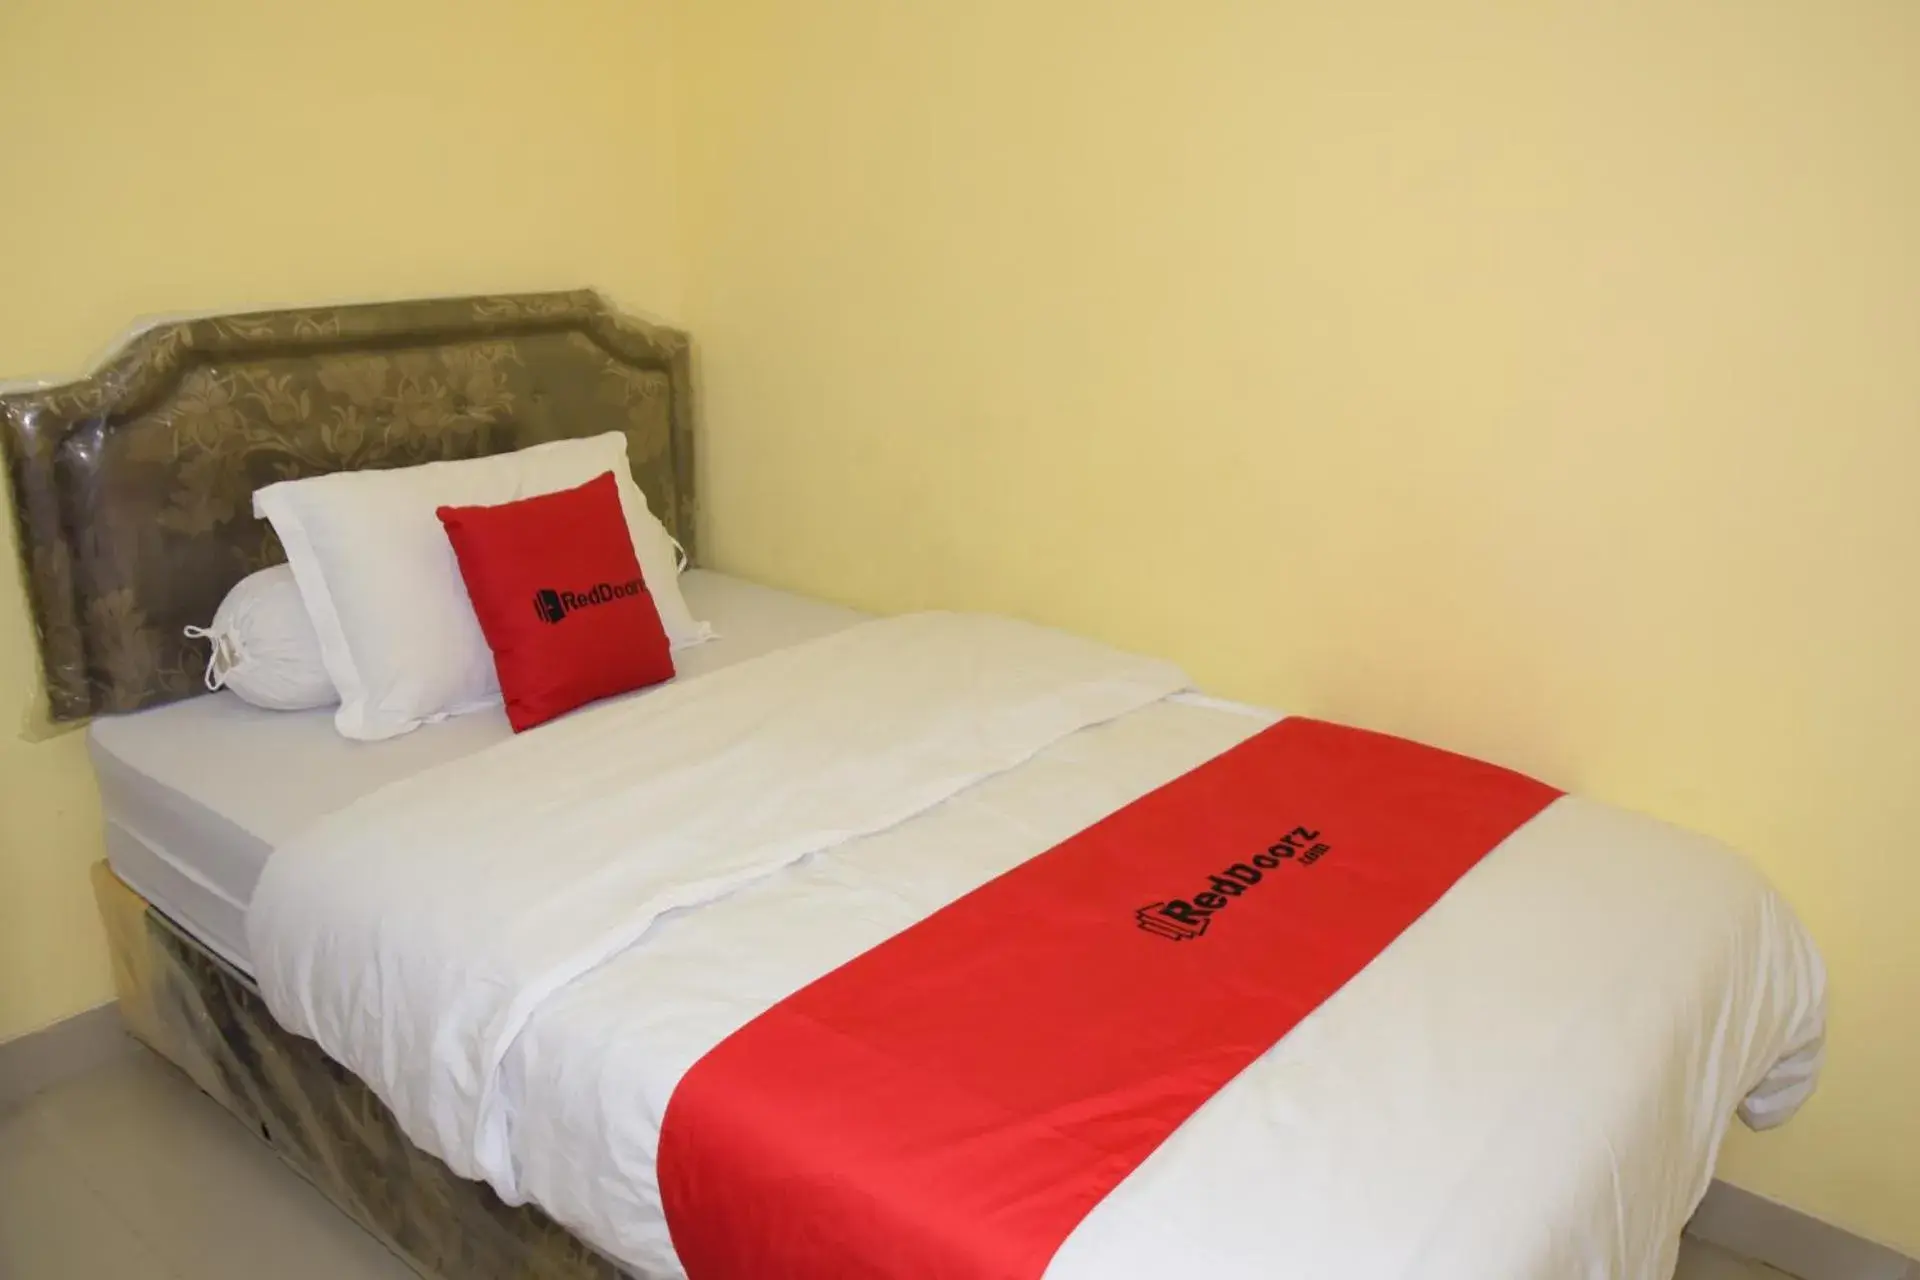 Bedroom, Bed in RedDoorz Syariah near Jogja City Mall 2